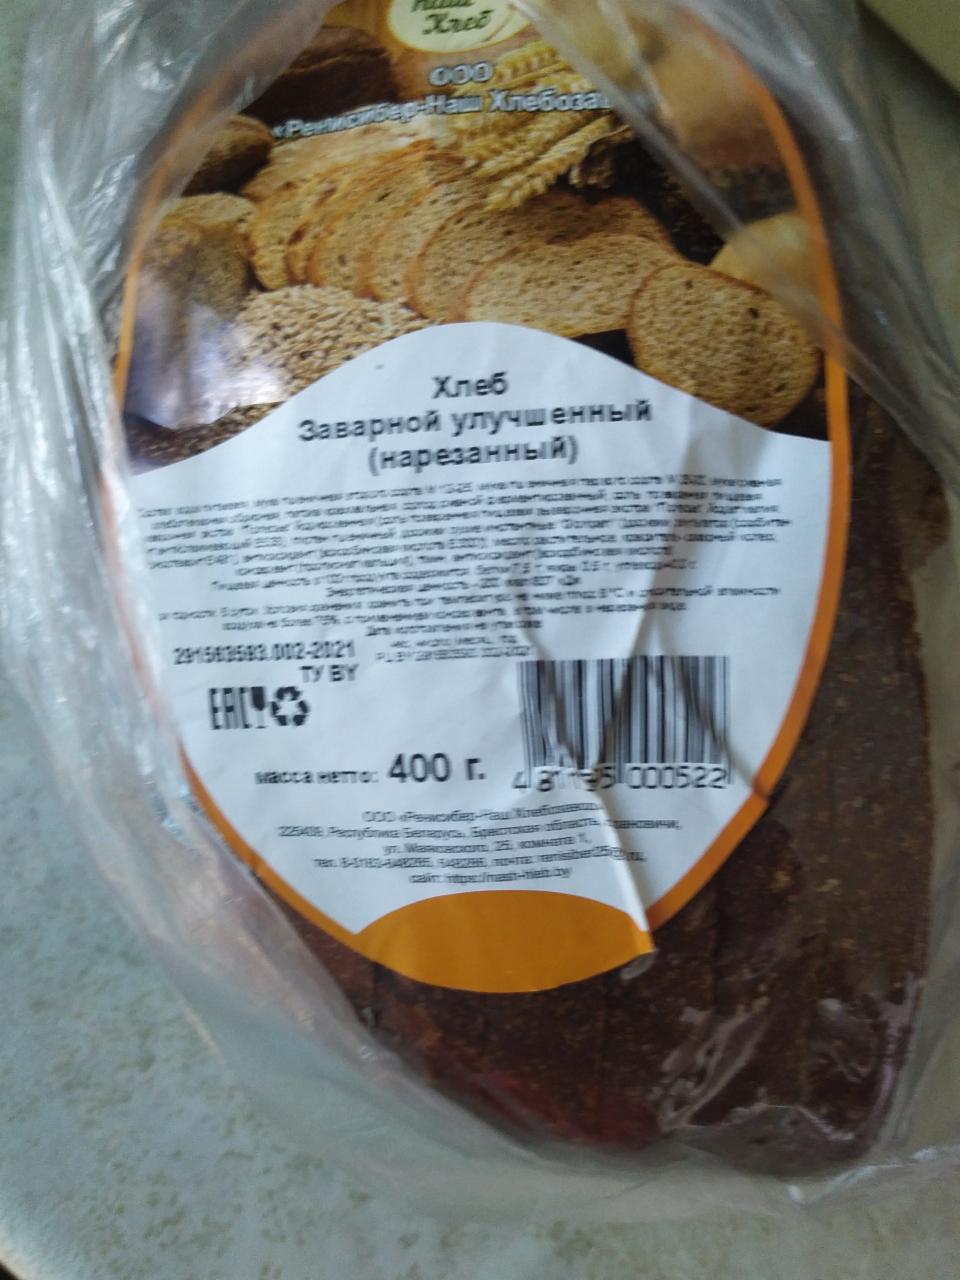 Фото - Хлеб заварной улучшенный черный Наш хлеб